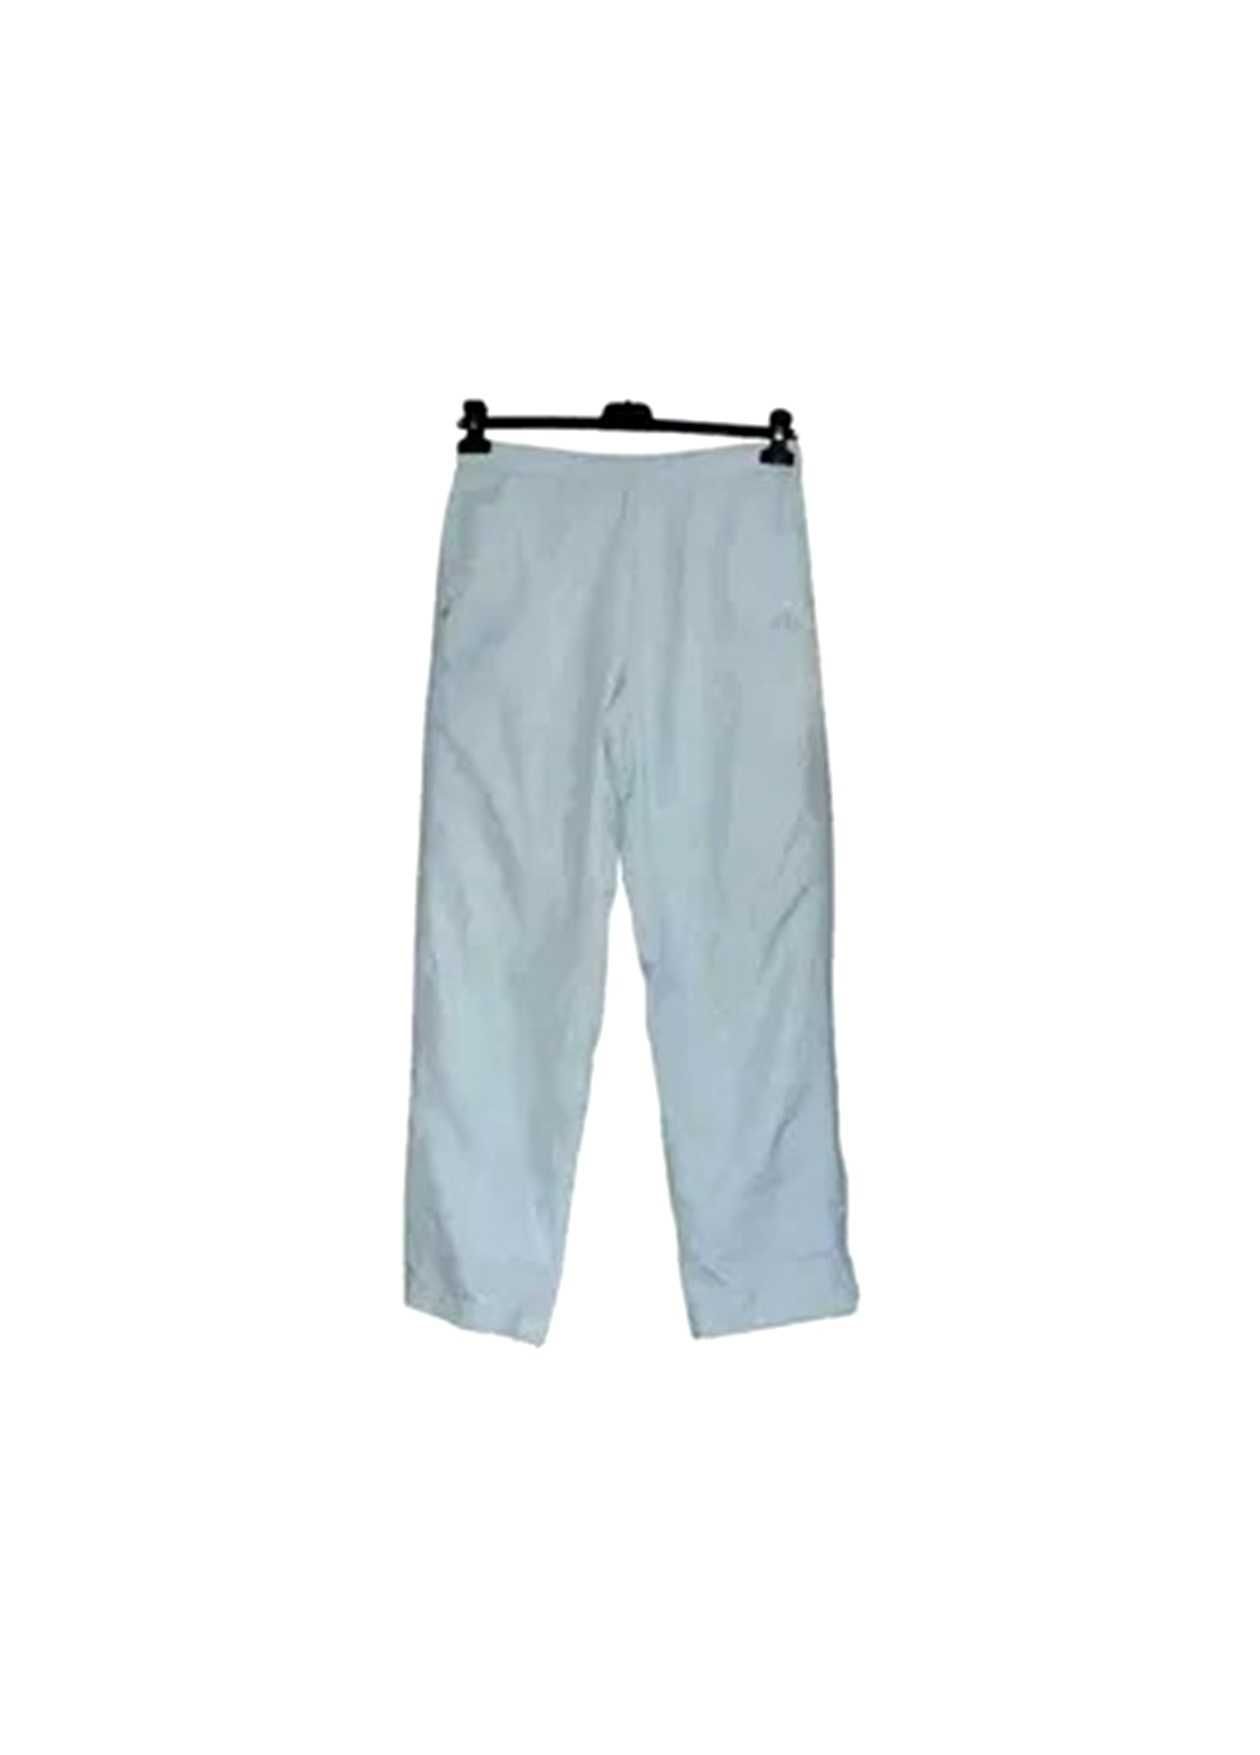 Adidas spodnie tkanina na podszewce sportowe rozmiar XL - 42 | 1O